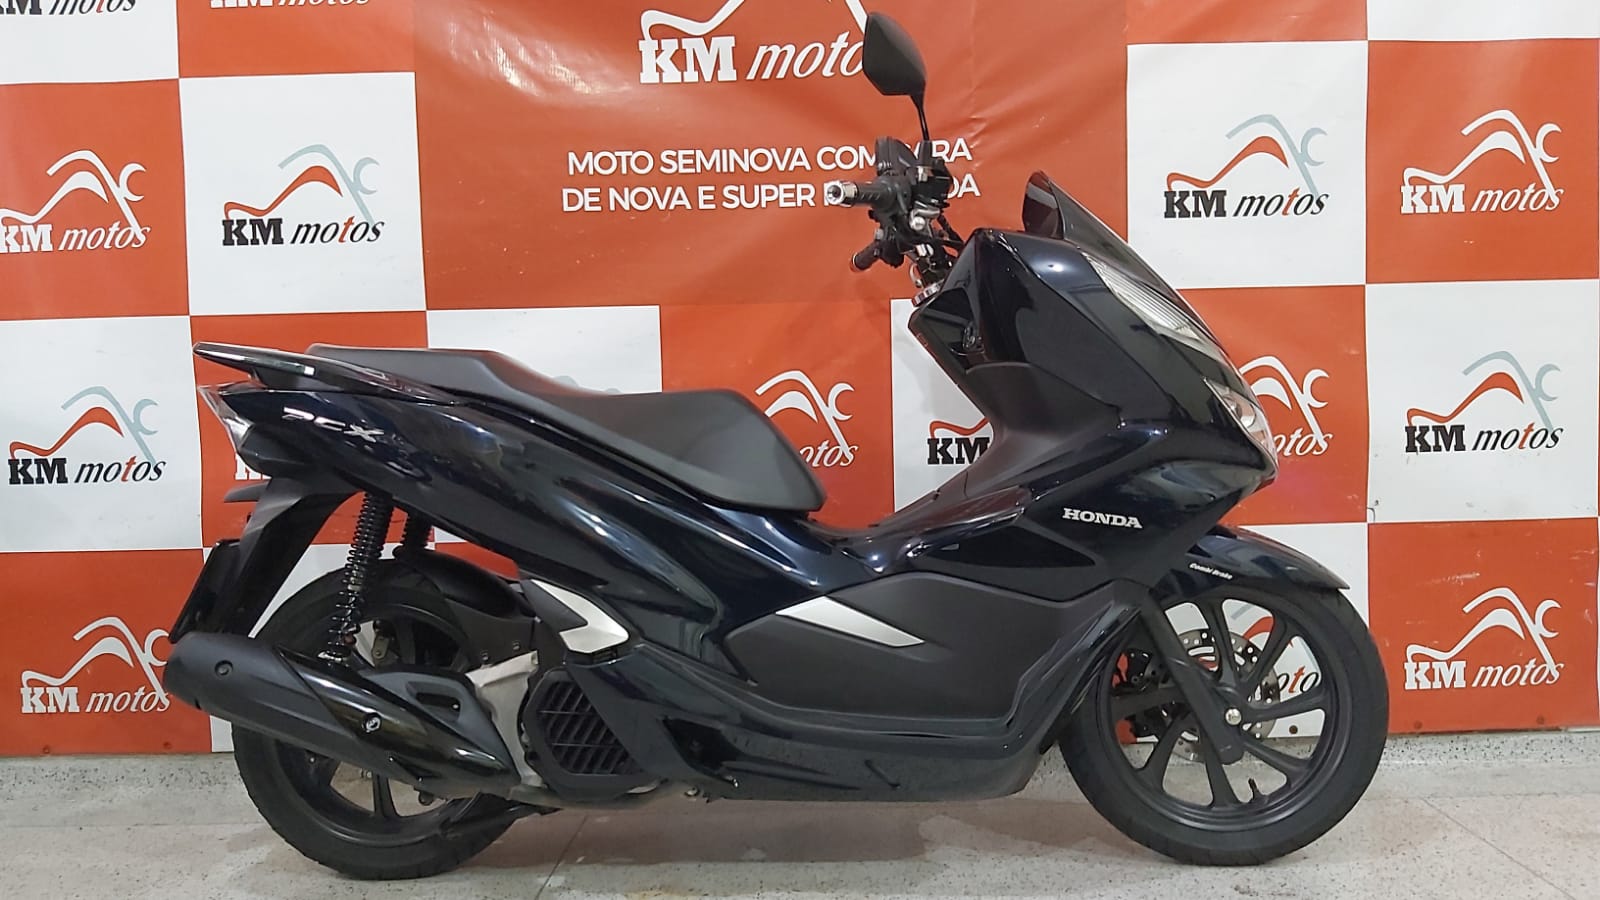 Honda Pcx 150 2019 Azul Km Motos Sua Loja De Motos Semi Novas 3473